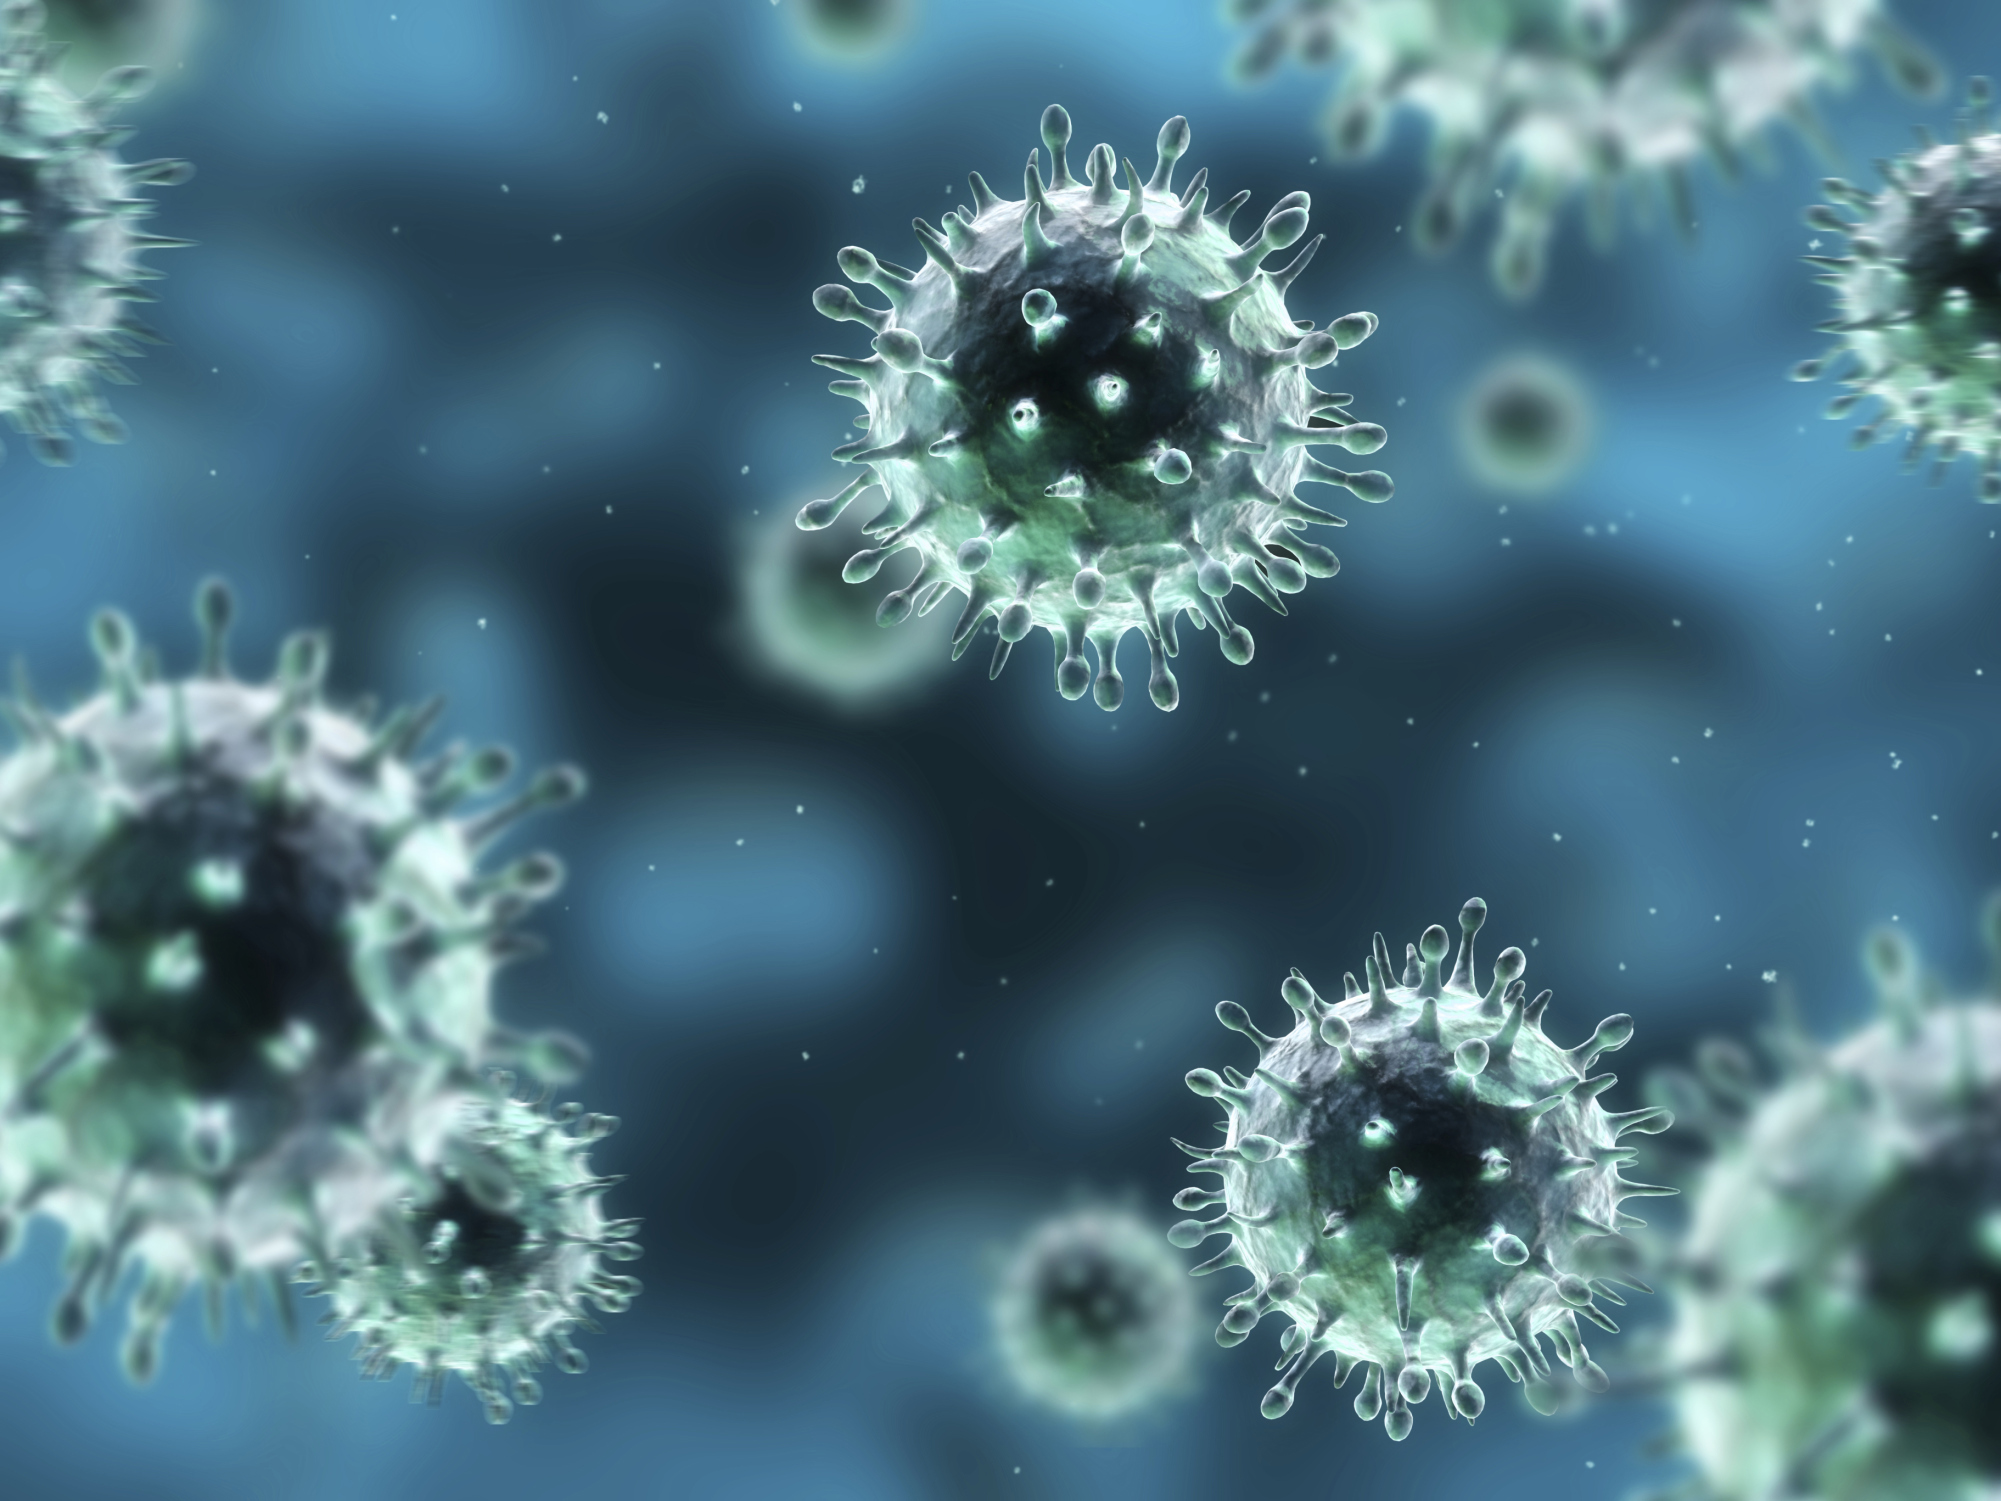 Ethiopia: H1N1 “Swine Flu” Virus Outbreak